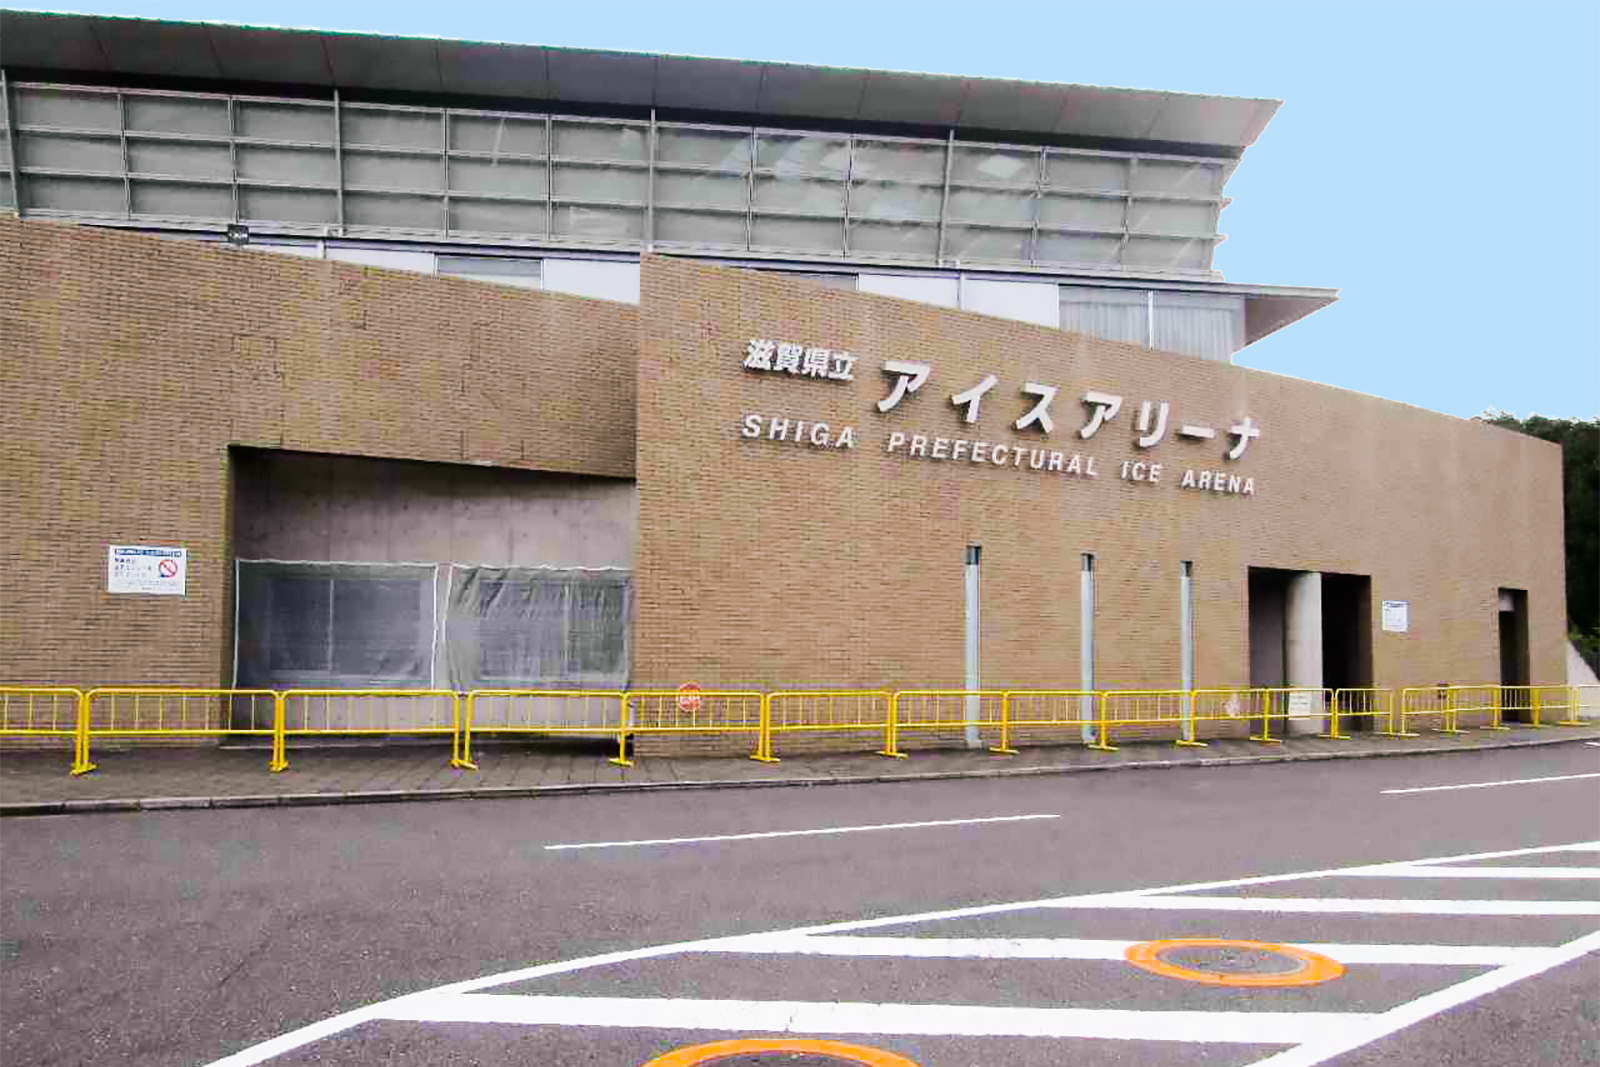 Shiga Prefectural Ice Arena